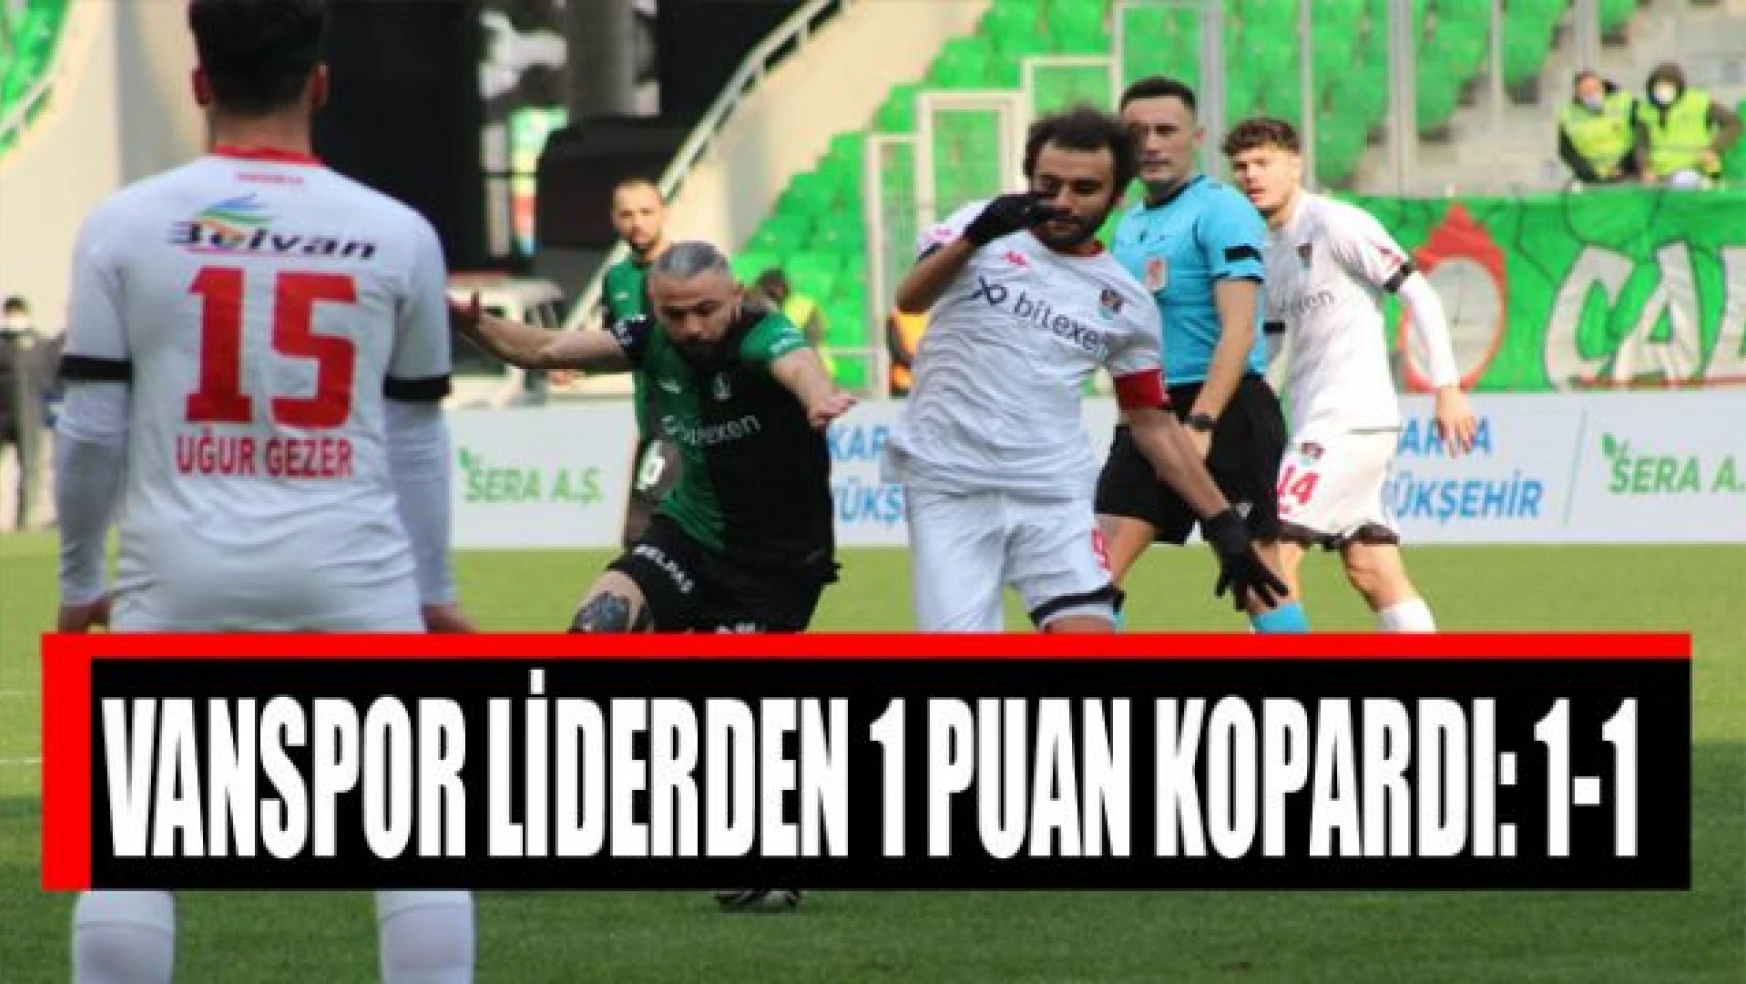 Vanspor, Sakaryaspor ile 1-1 berabere kaldı